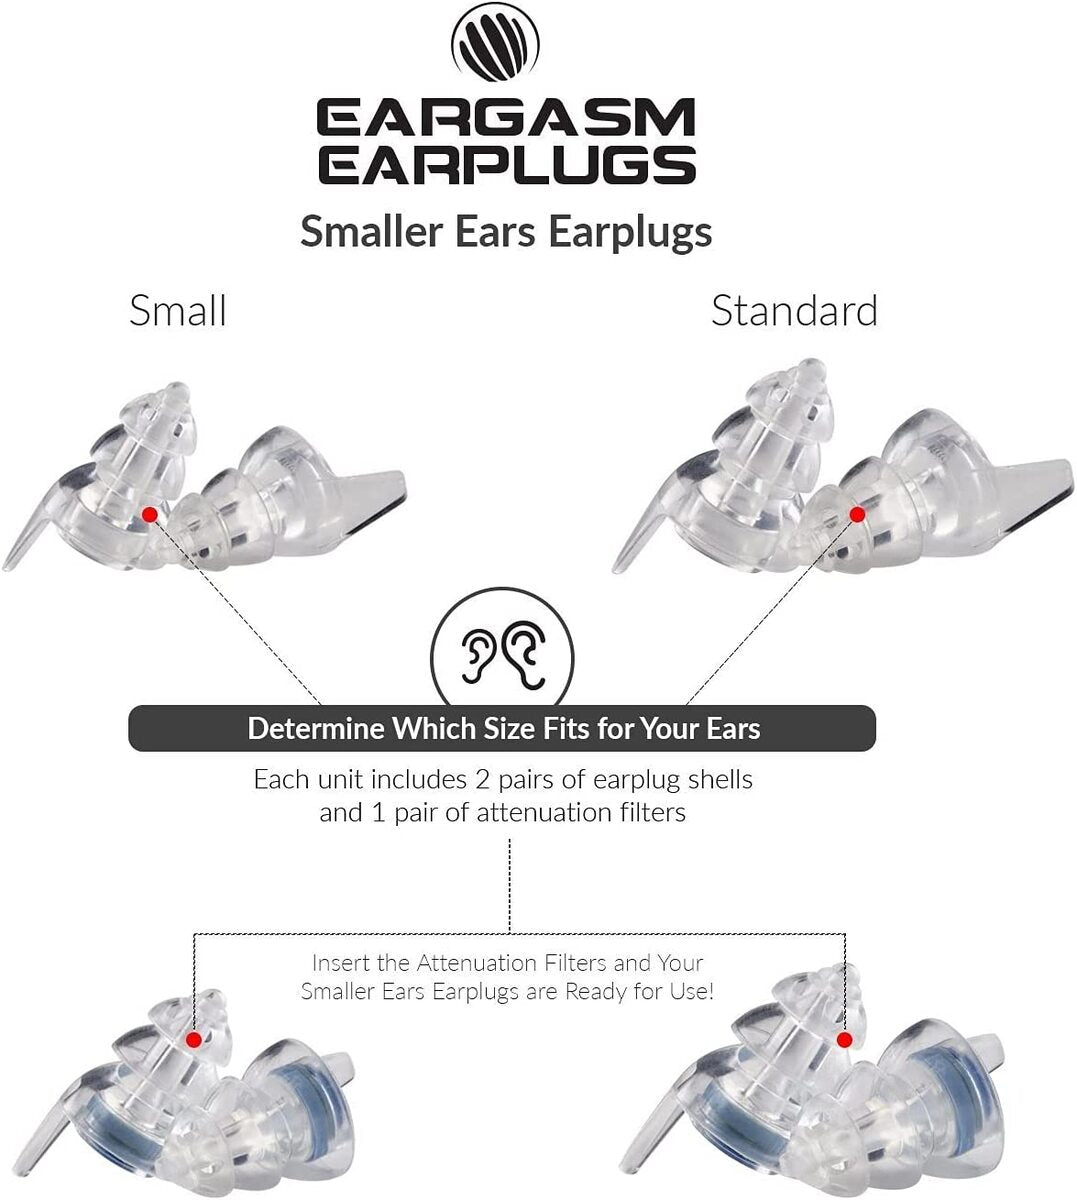 EARGASM HIGH FIDELITY EARPLUGS - SMALLER EARS OR STANDARD SIZE